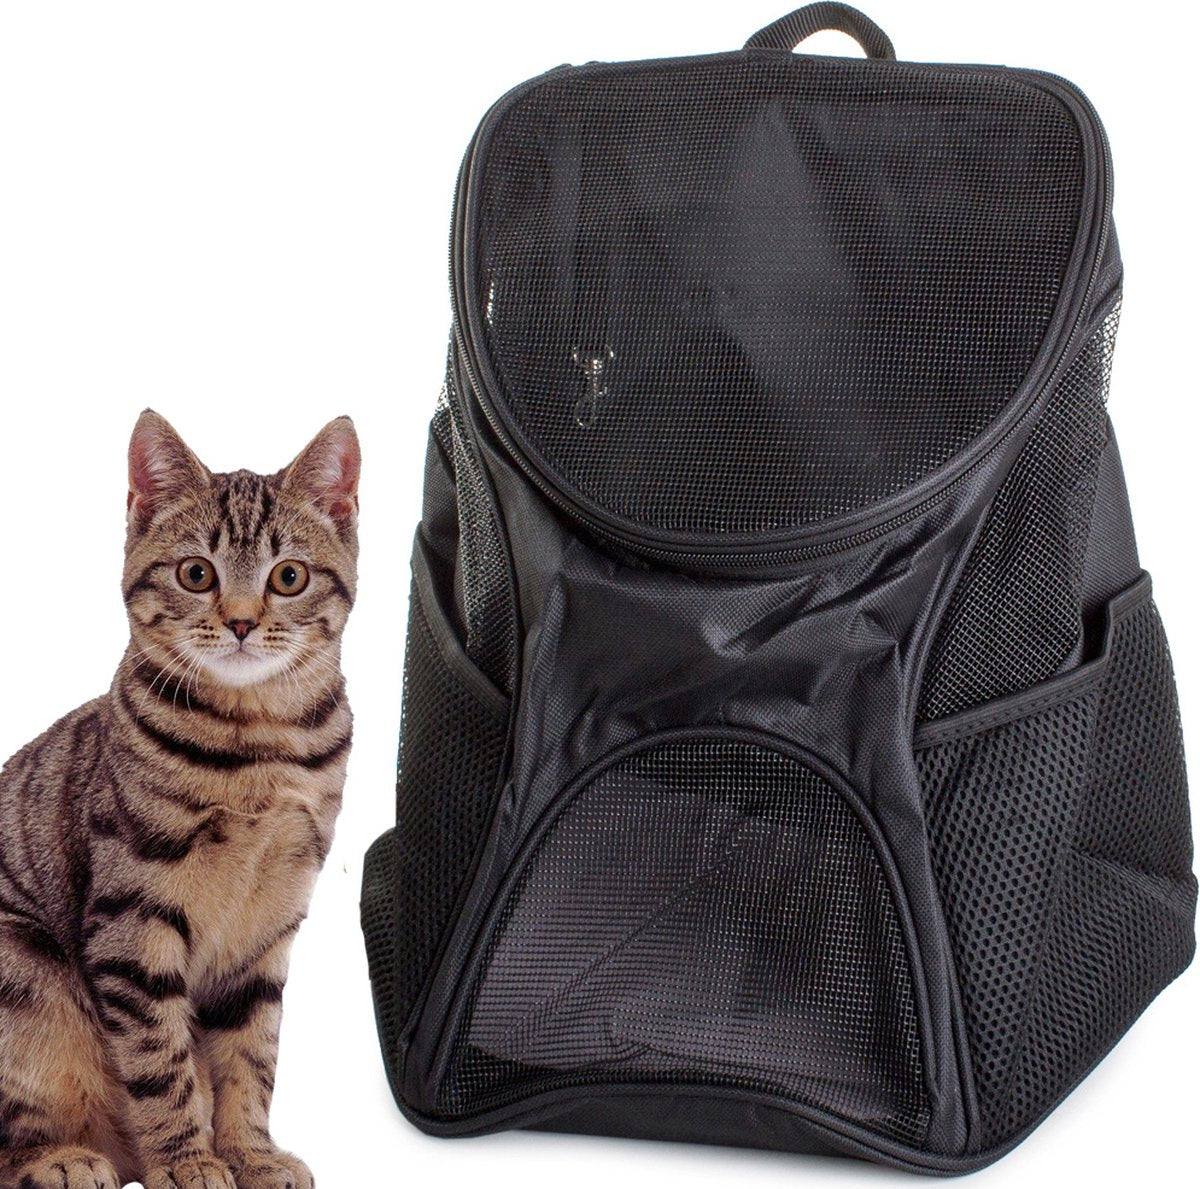 Ariko Reis rugzak voor uw huisdier - honden draagzak - rugzak - draagtas - hondenrugzak - hondendraagzak - ook voor uw kat - Zwart